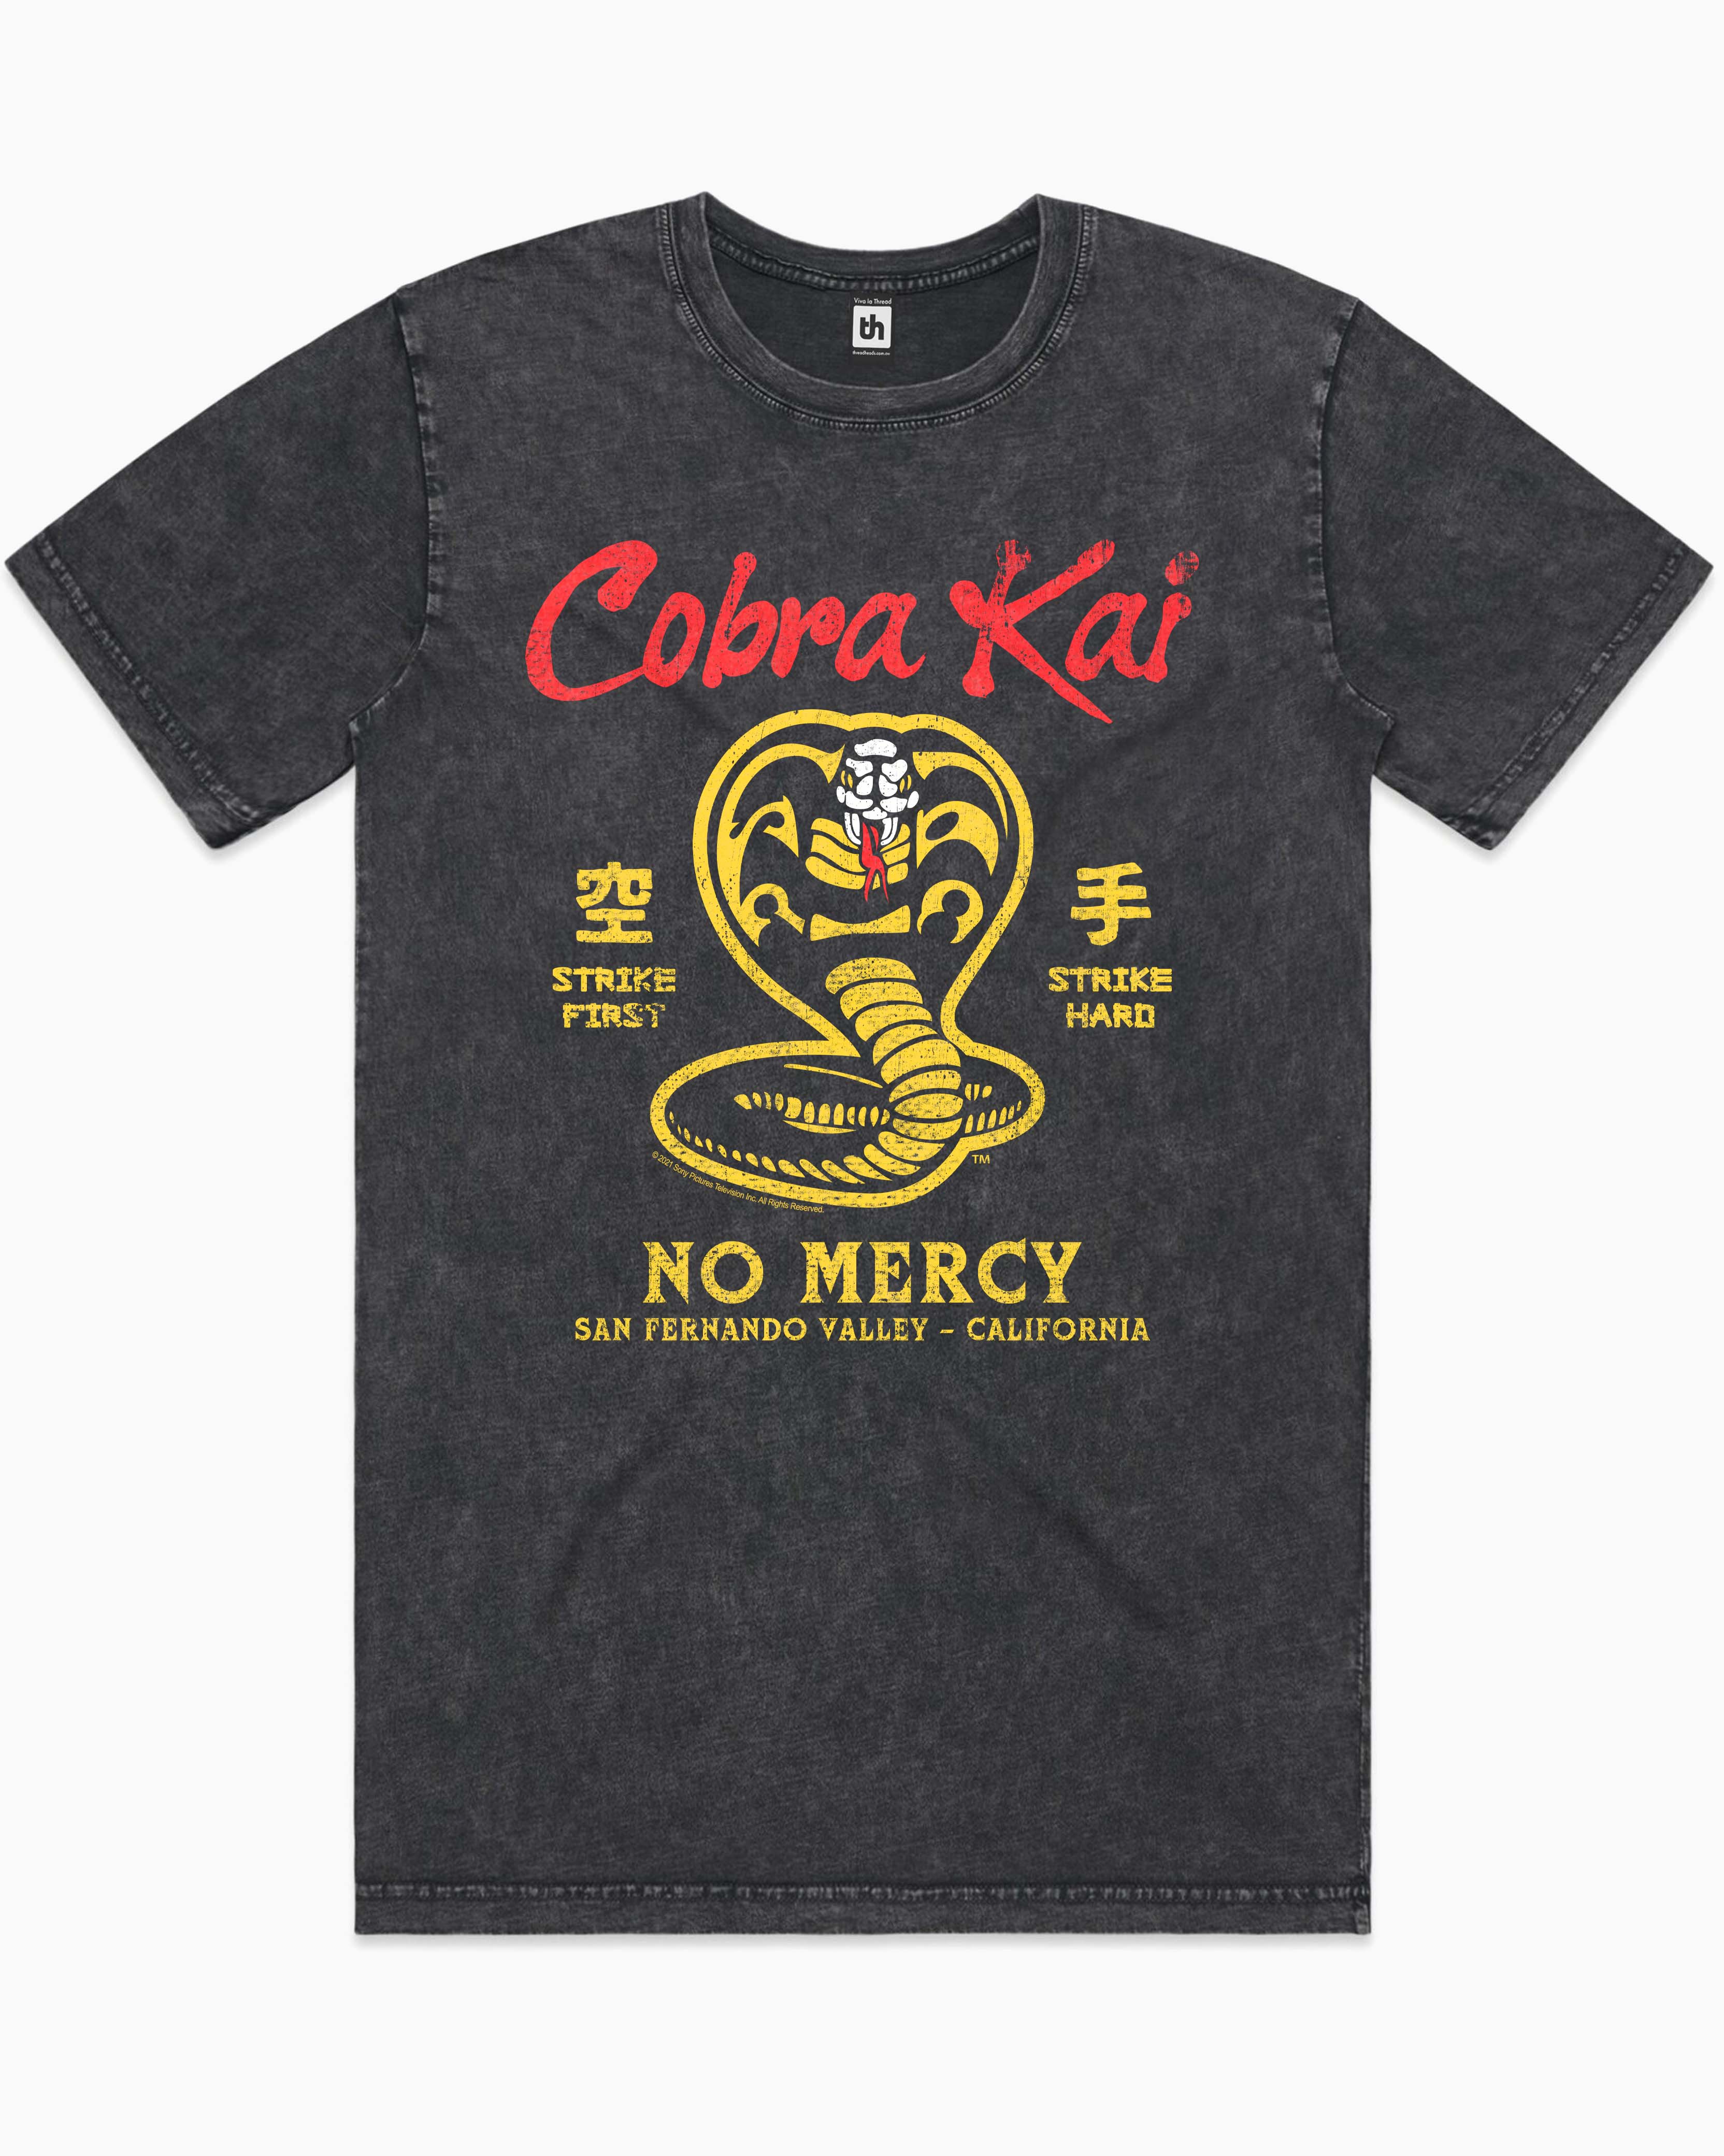 Cobra Kai Stonewash Tee Australia Online